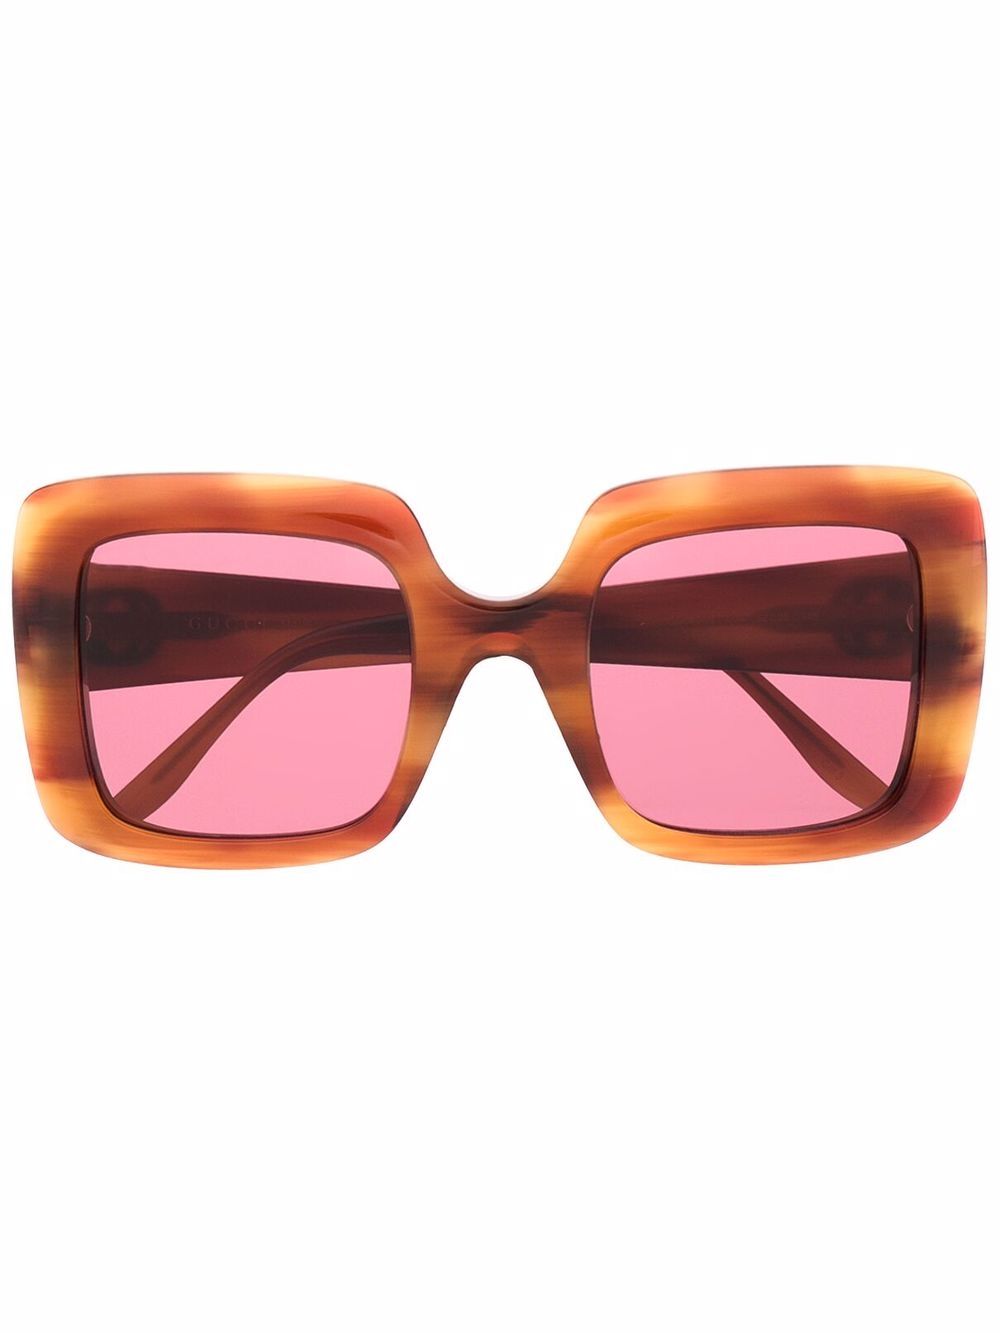 Gucci Eyewear Interlocking GG logo sunglasses - Brown von Gucci Eyewear